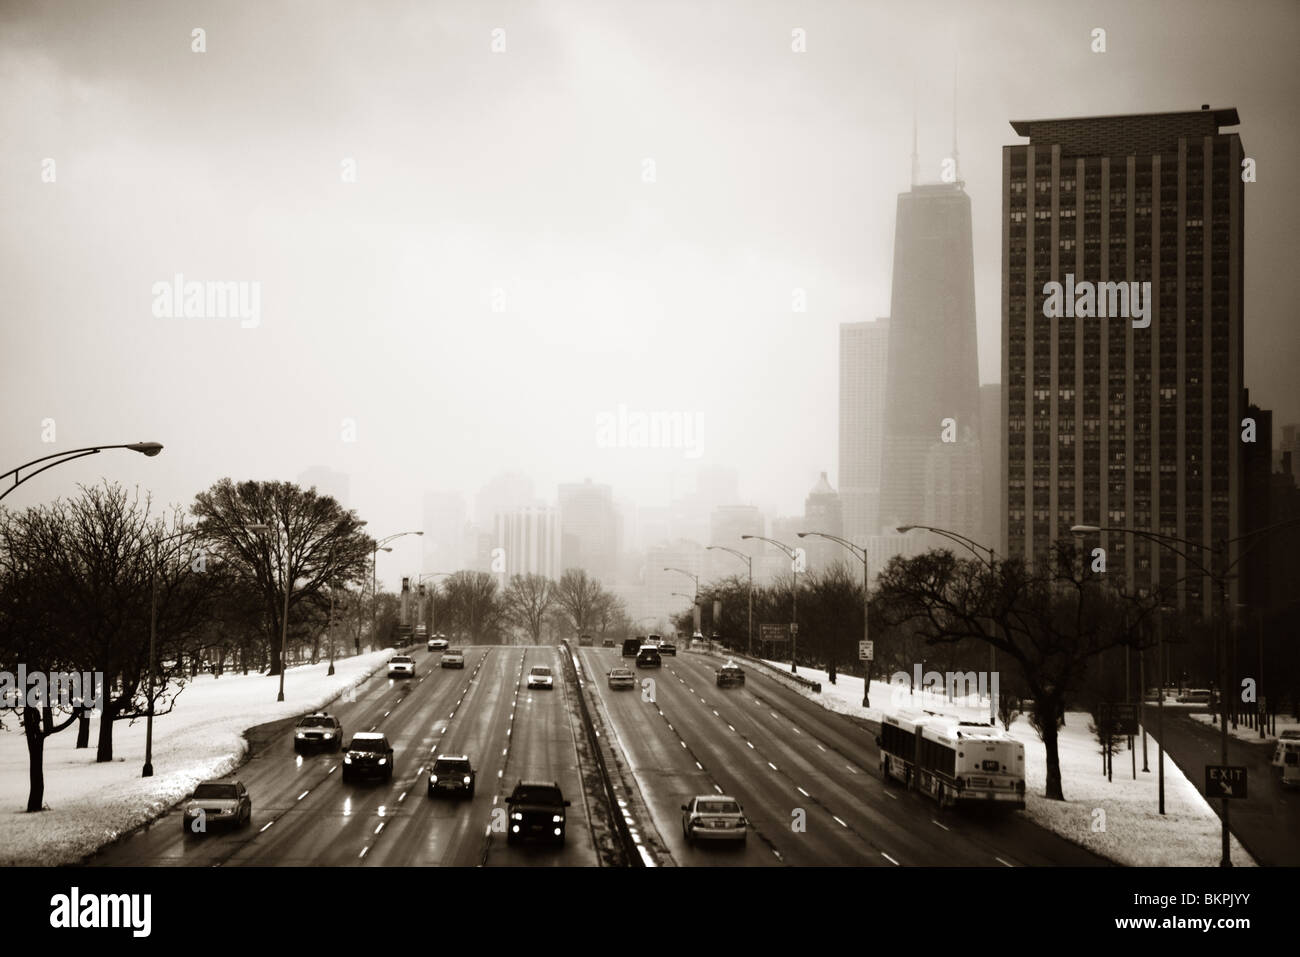 LAKE SHORE DRIVE IN WINTER, CHICAGO, ILLINOIS Stock Photo